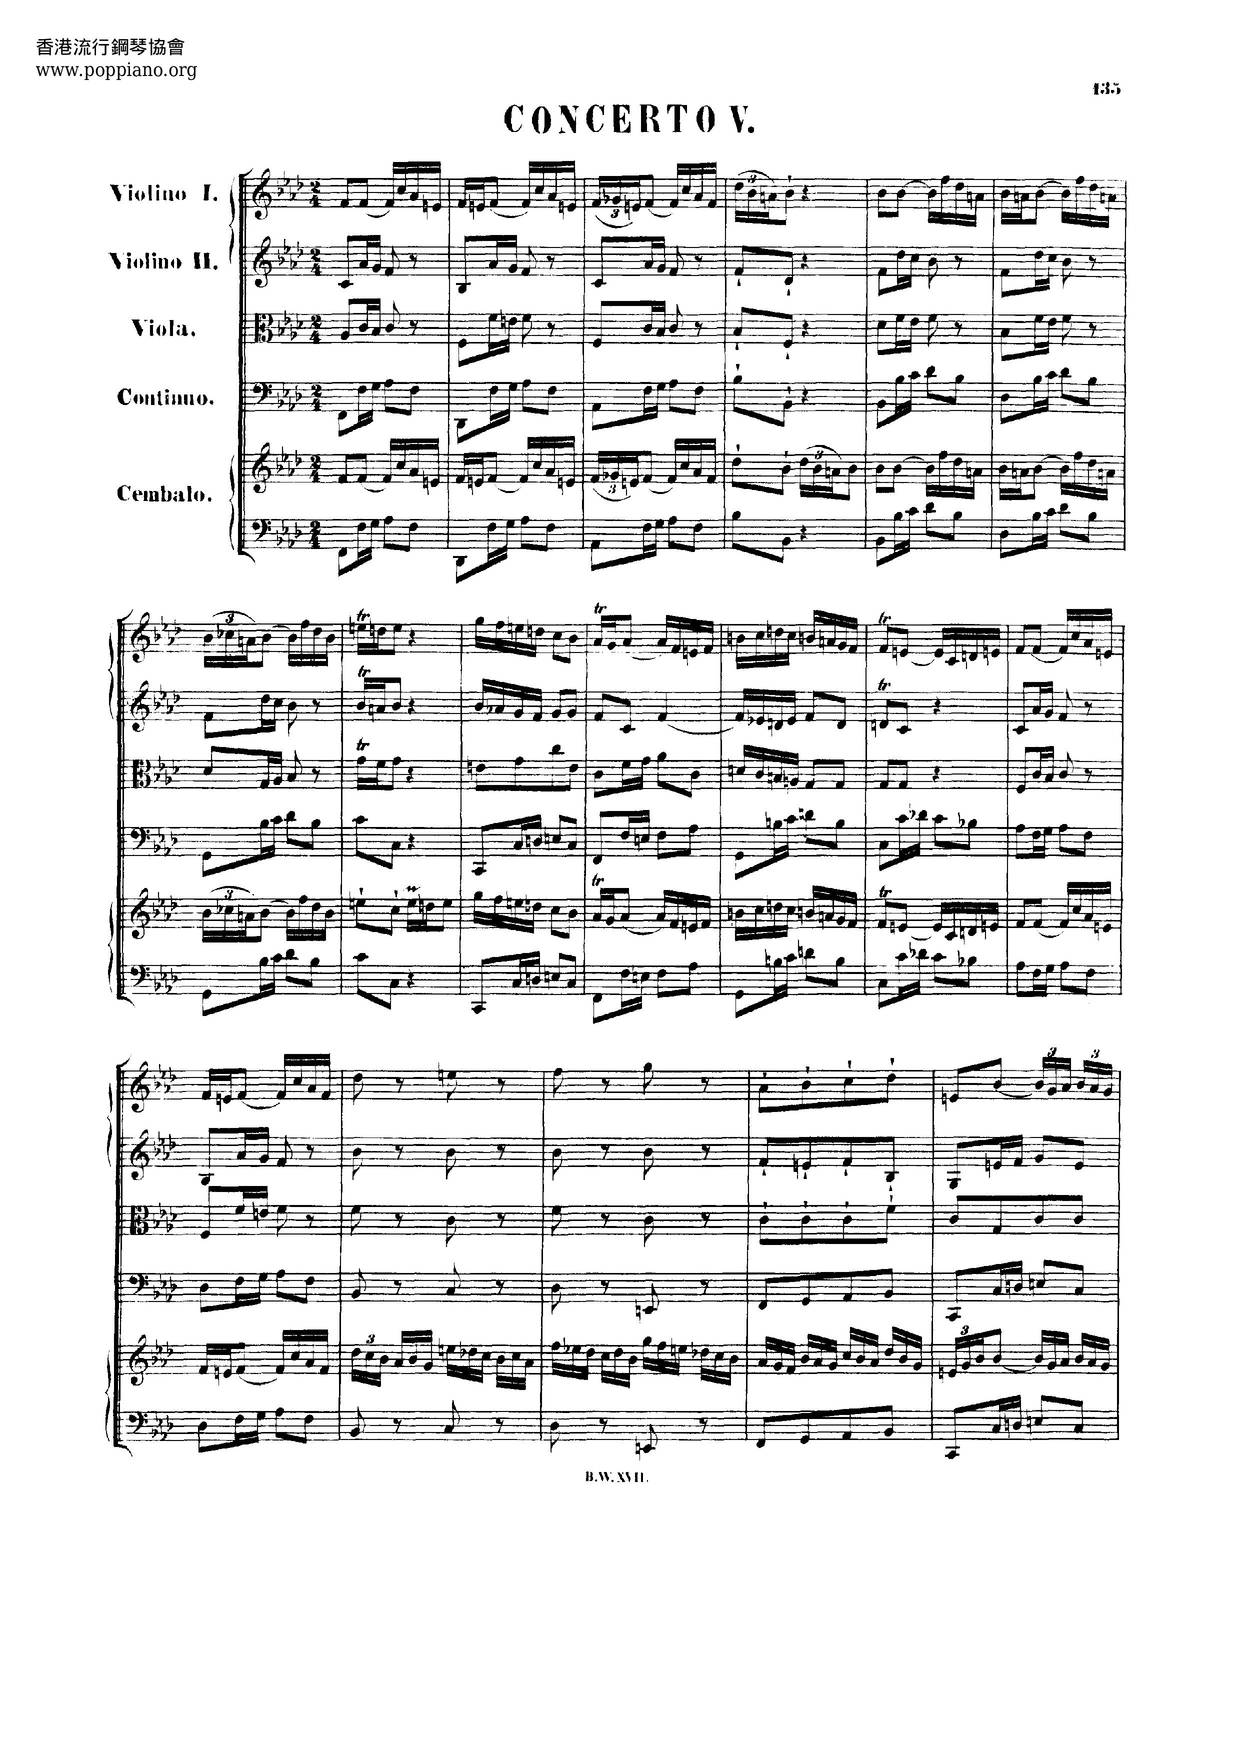 Harpsichord Concerto No. 5 In F Minor, BWV 1056 Score